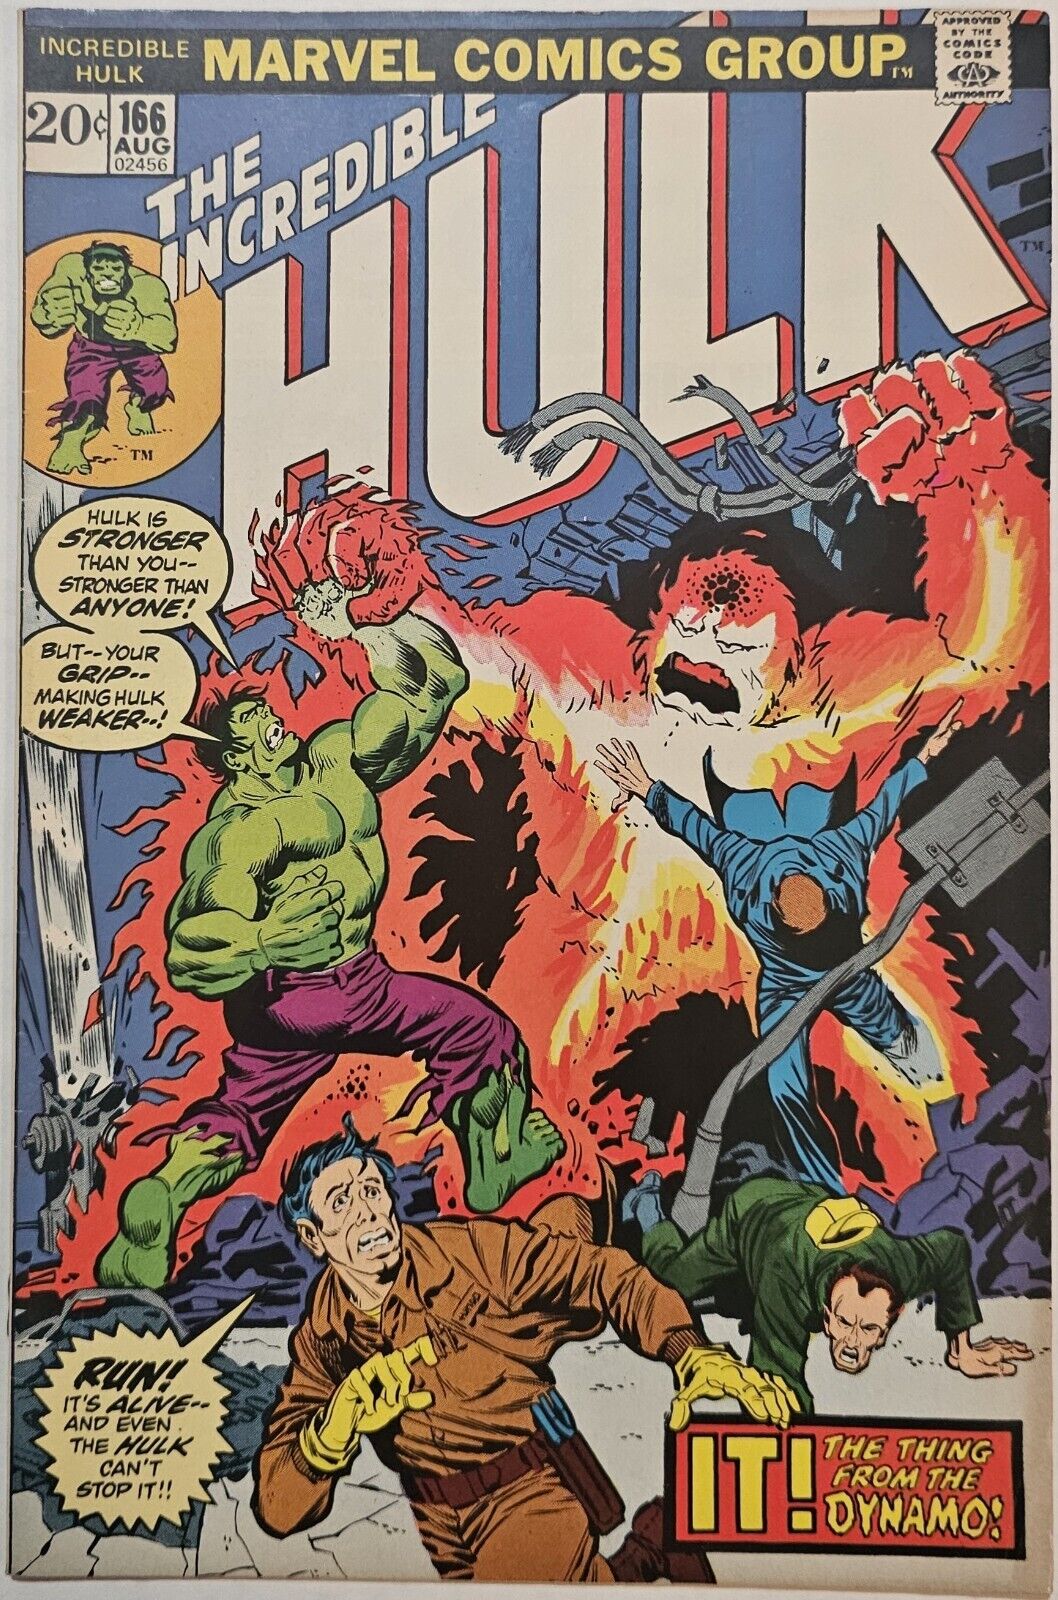 Incredible Hulk #166 1973 Cover-Herb Trimpe Marvel Comics FN